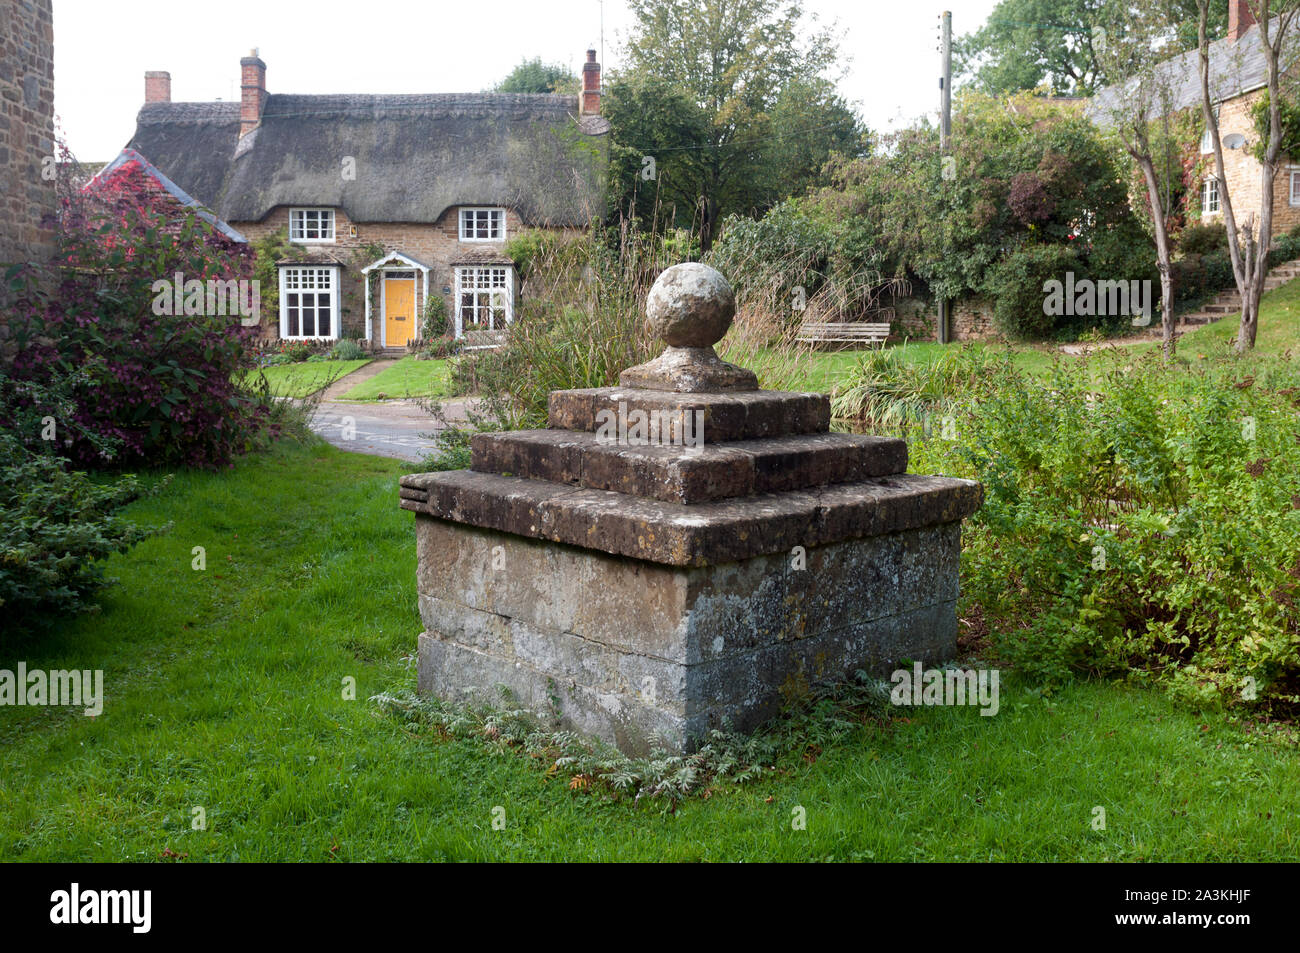 Das Gehäuse, Sibford Gower, Oxfordshire, England, Großbritannien Stockfoto